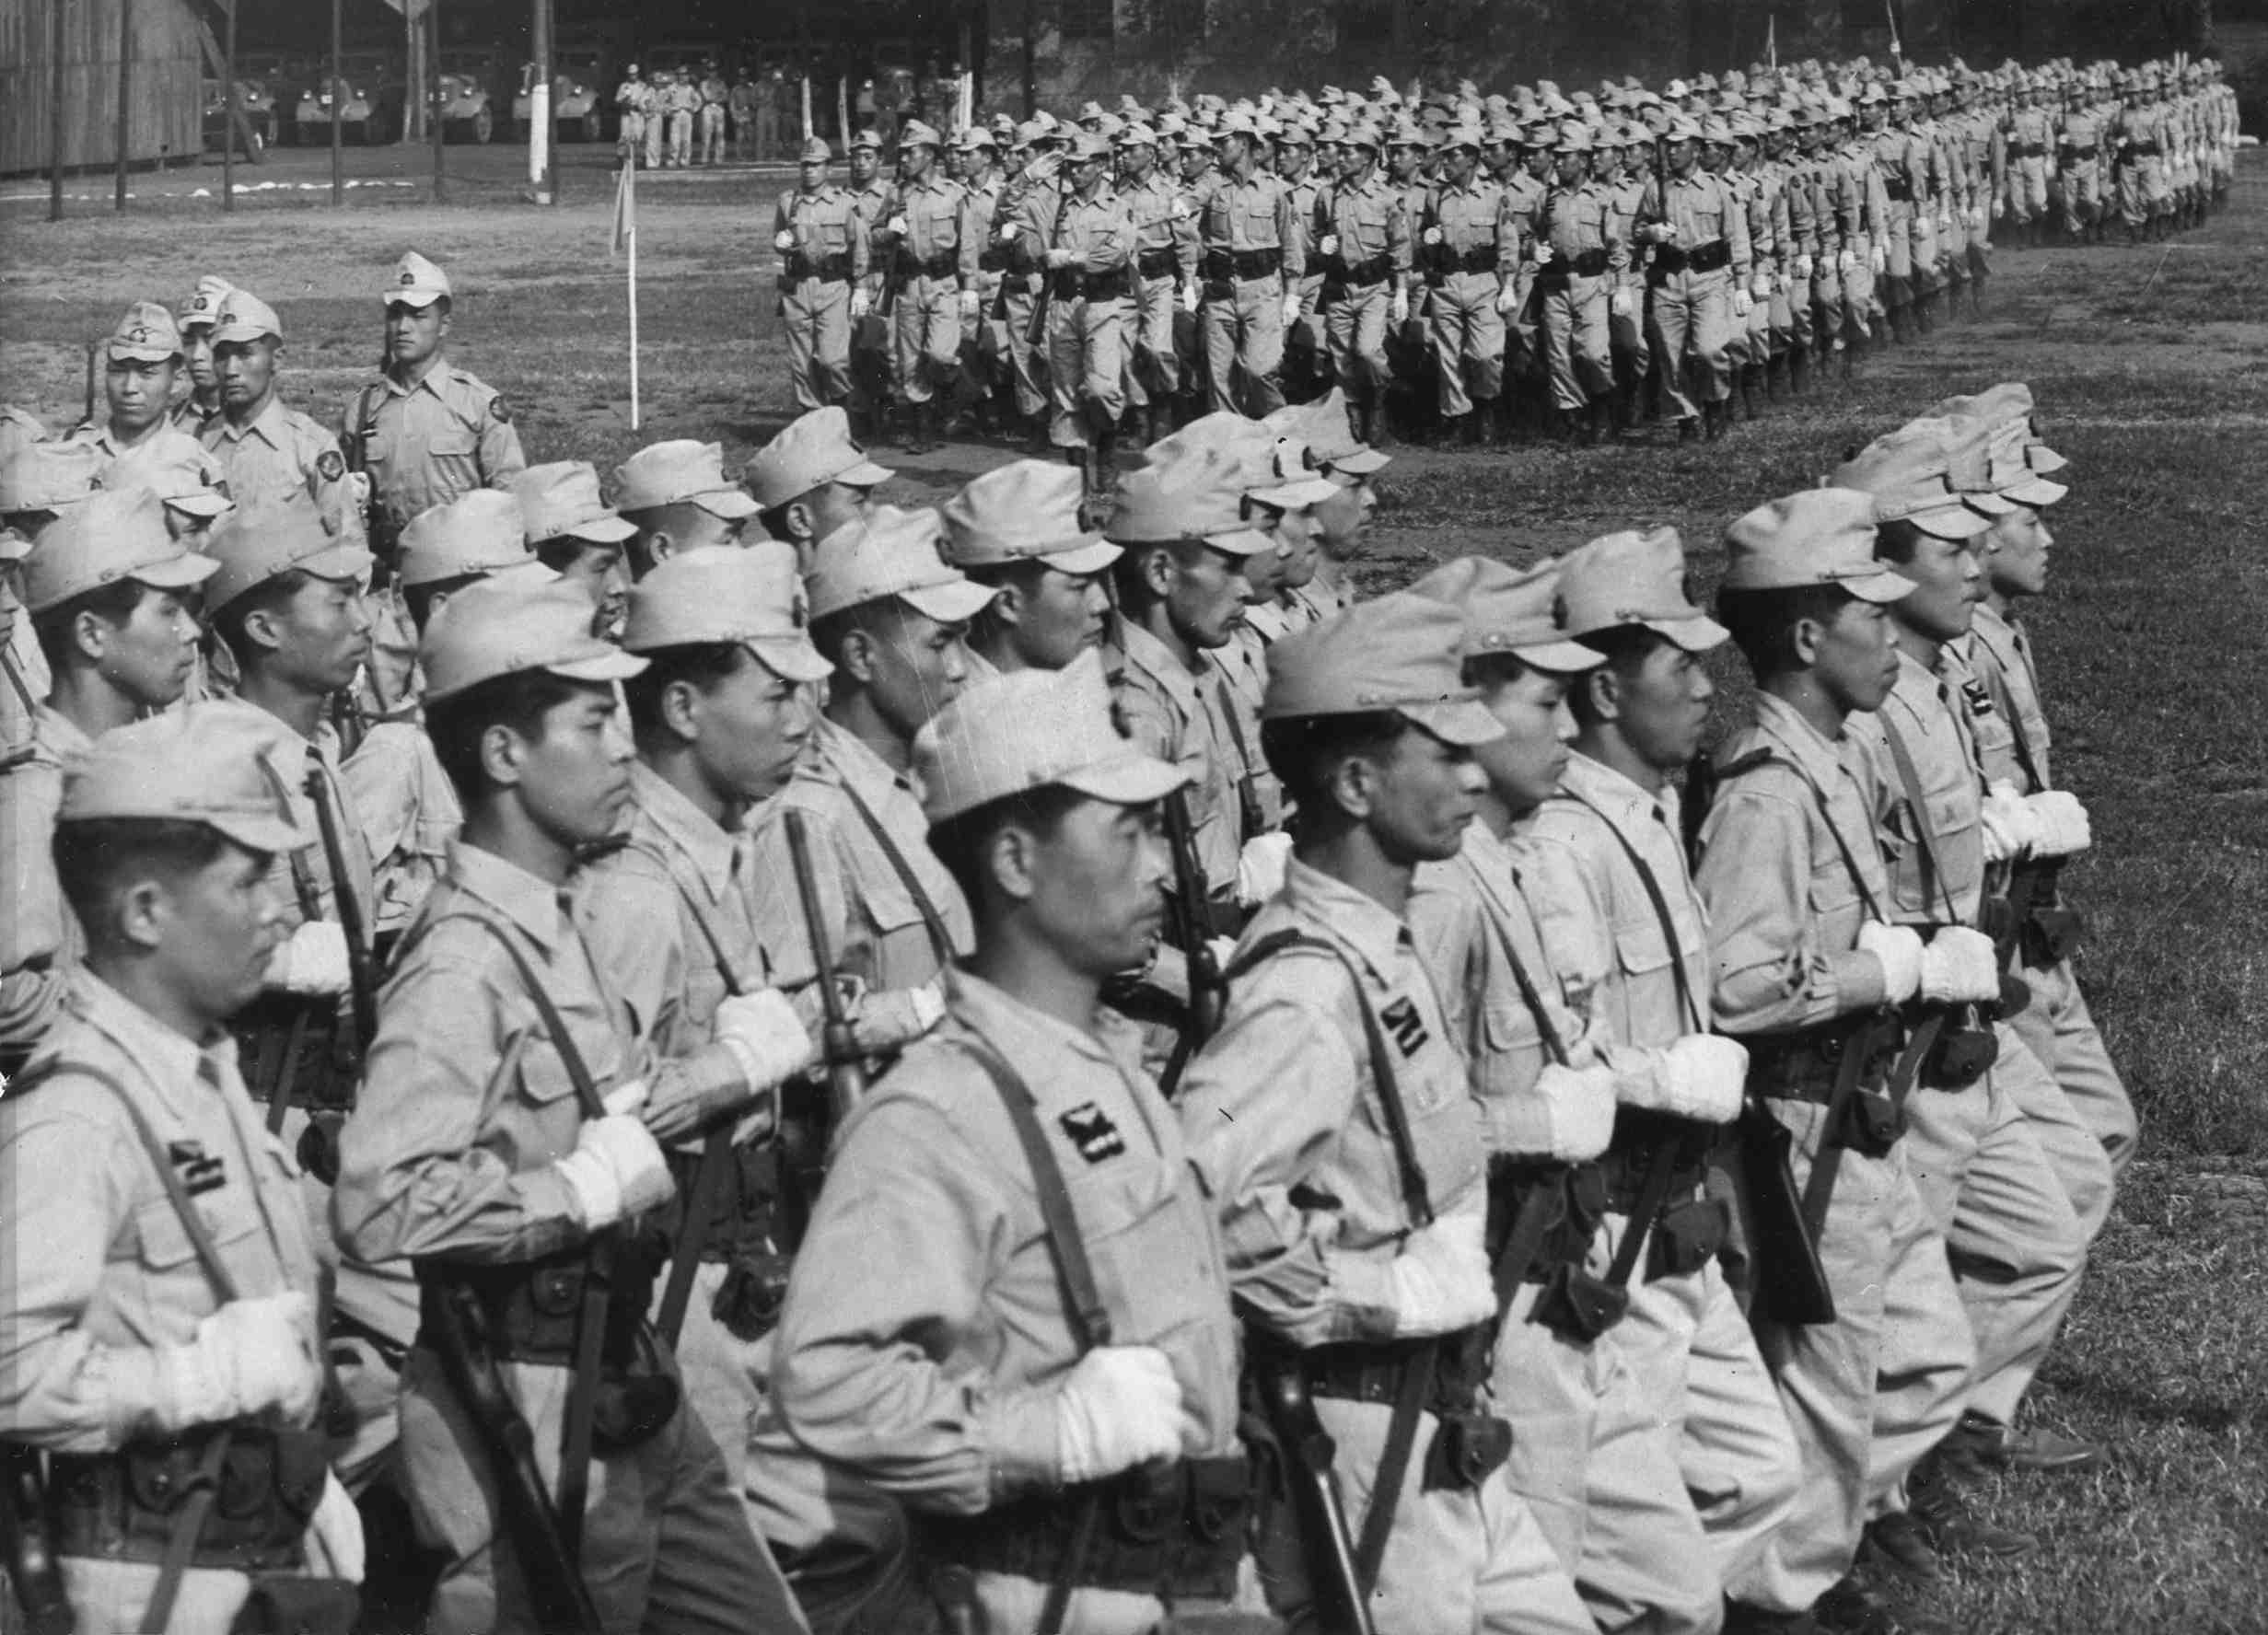 二战日本警察服装图片